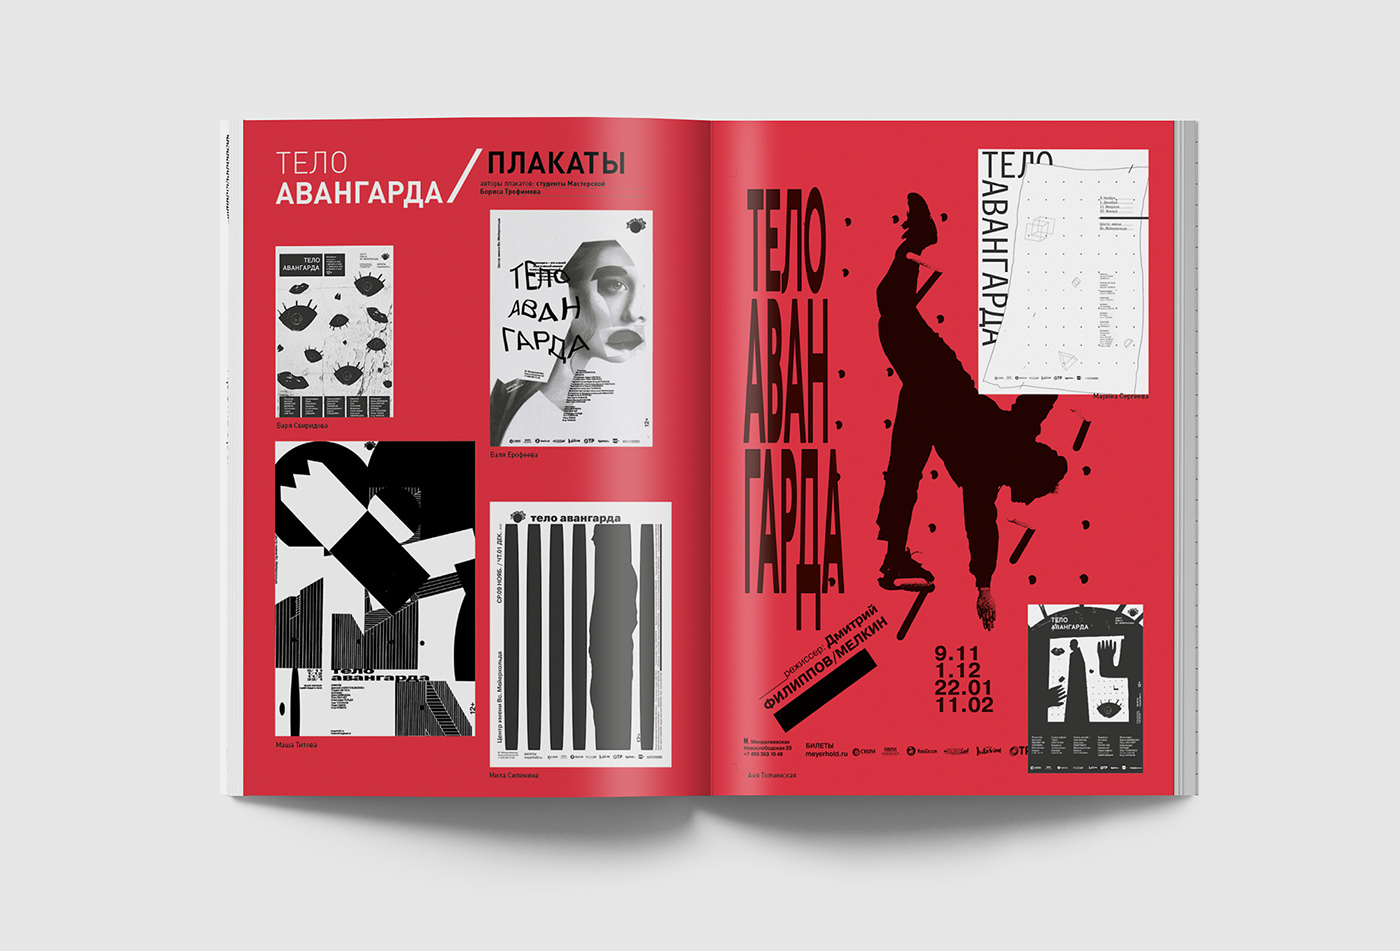 magazine magazine layout Theatre magazine about theatre Layout typography   Robert Wilson Pina Bausch bauhaus oskar schlemmer